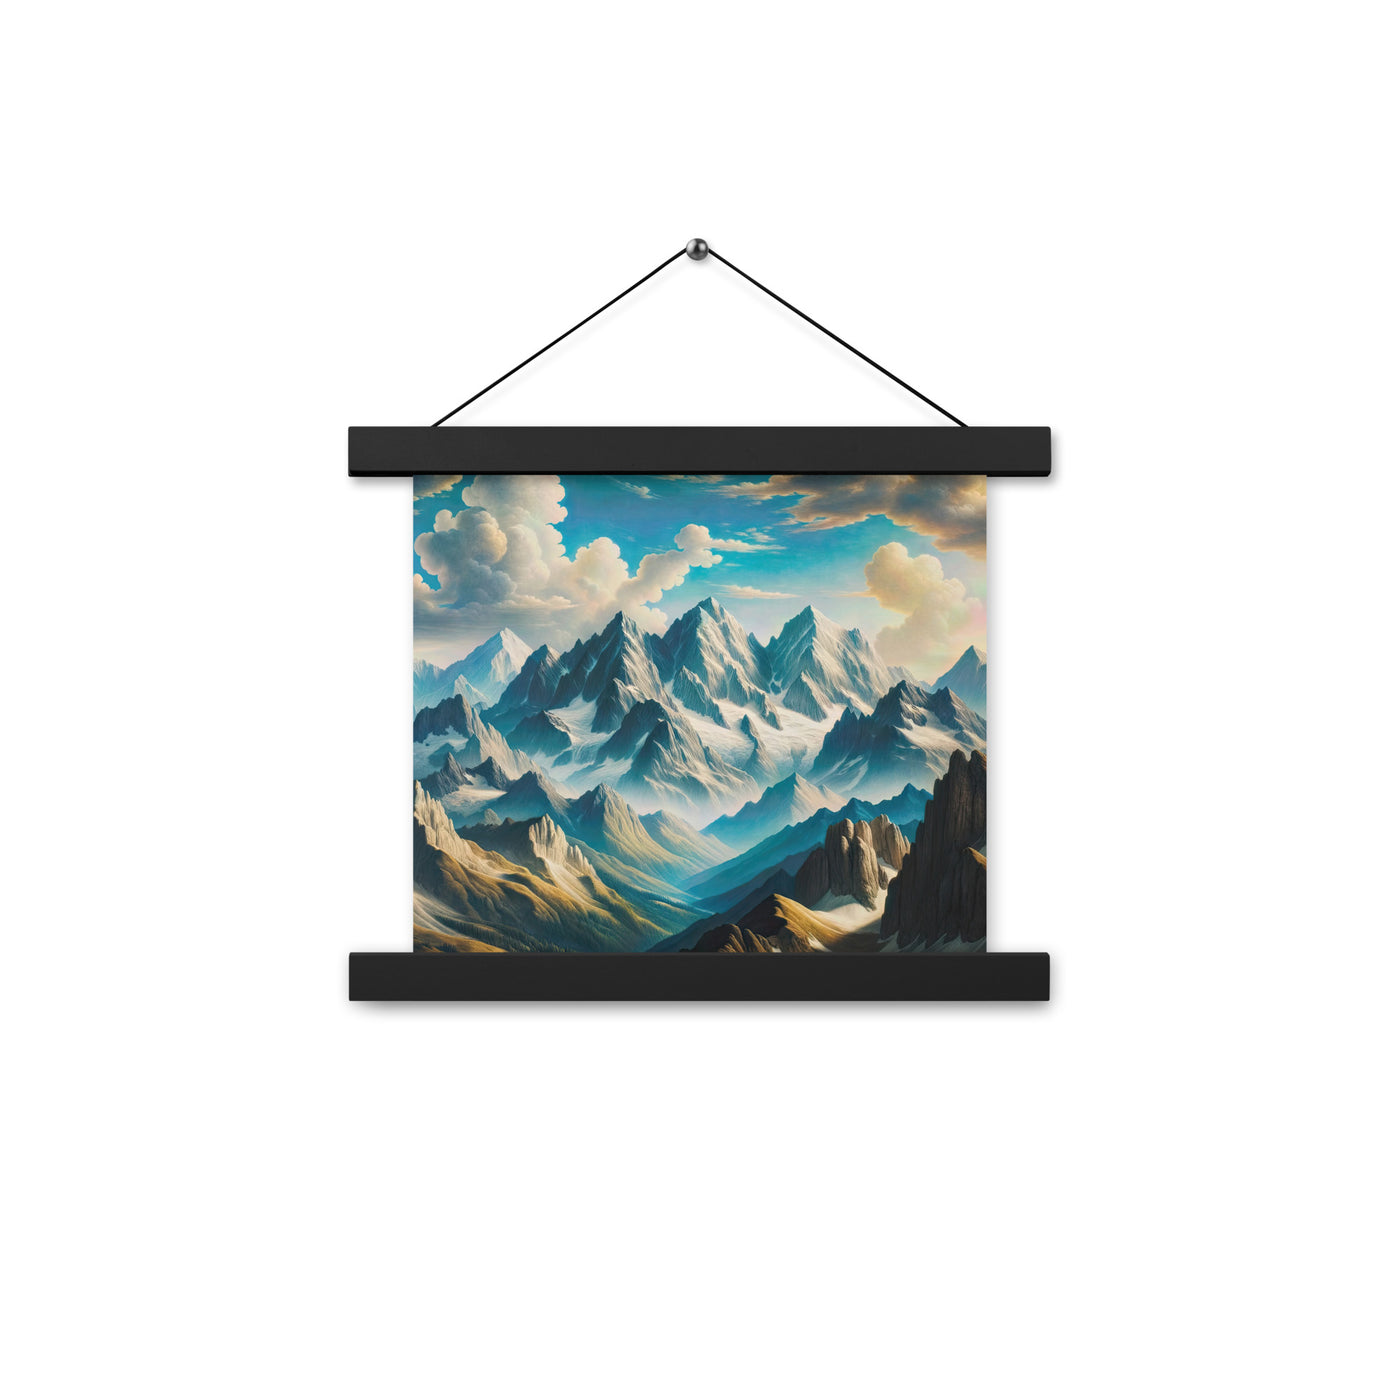 Ein Gemälde von Bergen, das eine epische Atmosphäre ausstrahlt. Kunst der Frührenaissance - Premium Poster mit Aufhängung berge xxx yyy zzz 25.4 x 25.4 cm